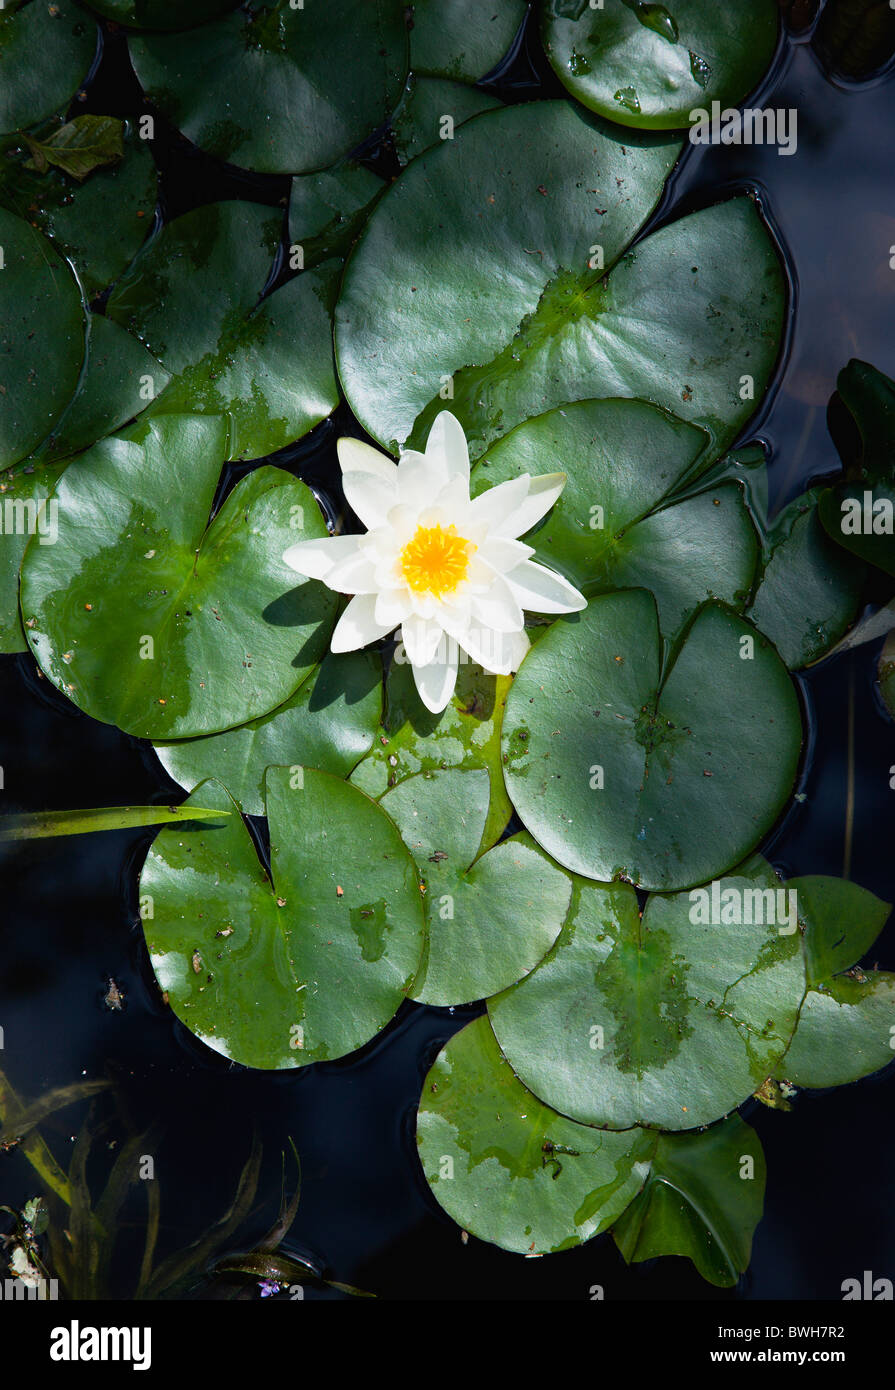 Jardines, plantas acuáticas, solo nenúfar blanco de la familia Nymphaeaceae en un estanque rodeado de hojas flotando Foto de stock